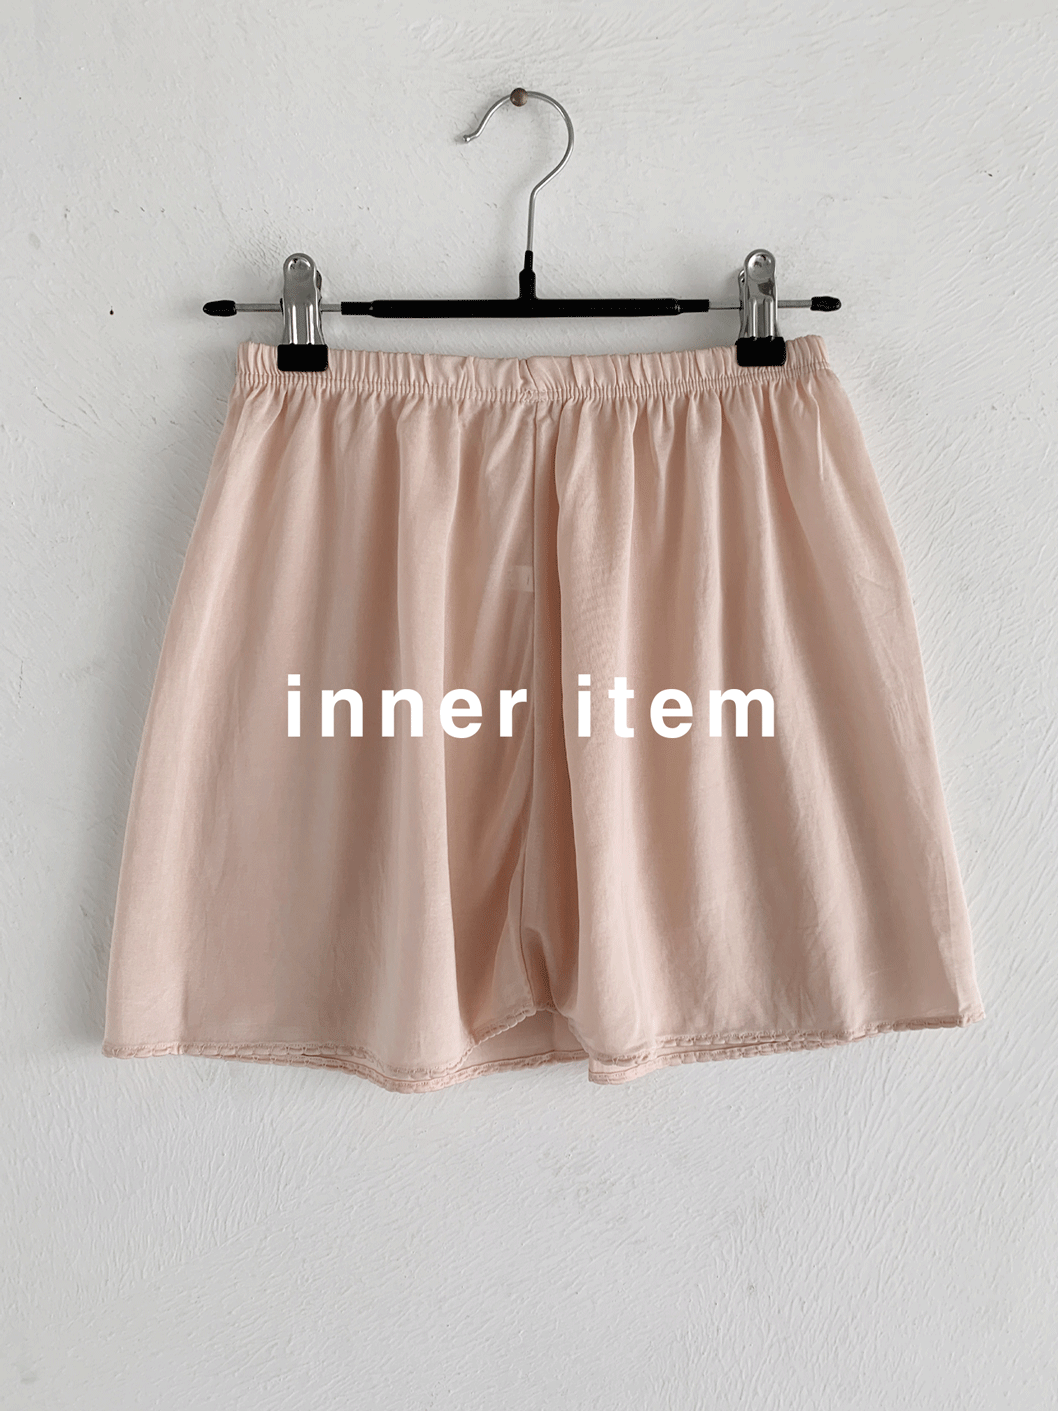 inner item (sk,pt)